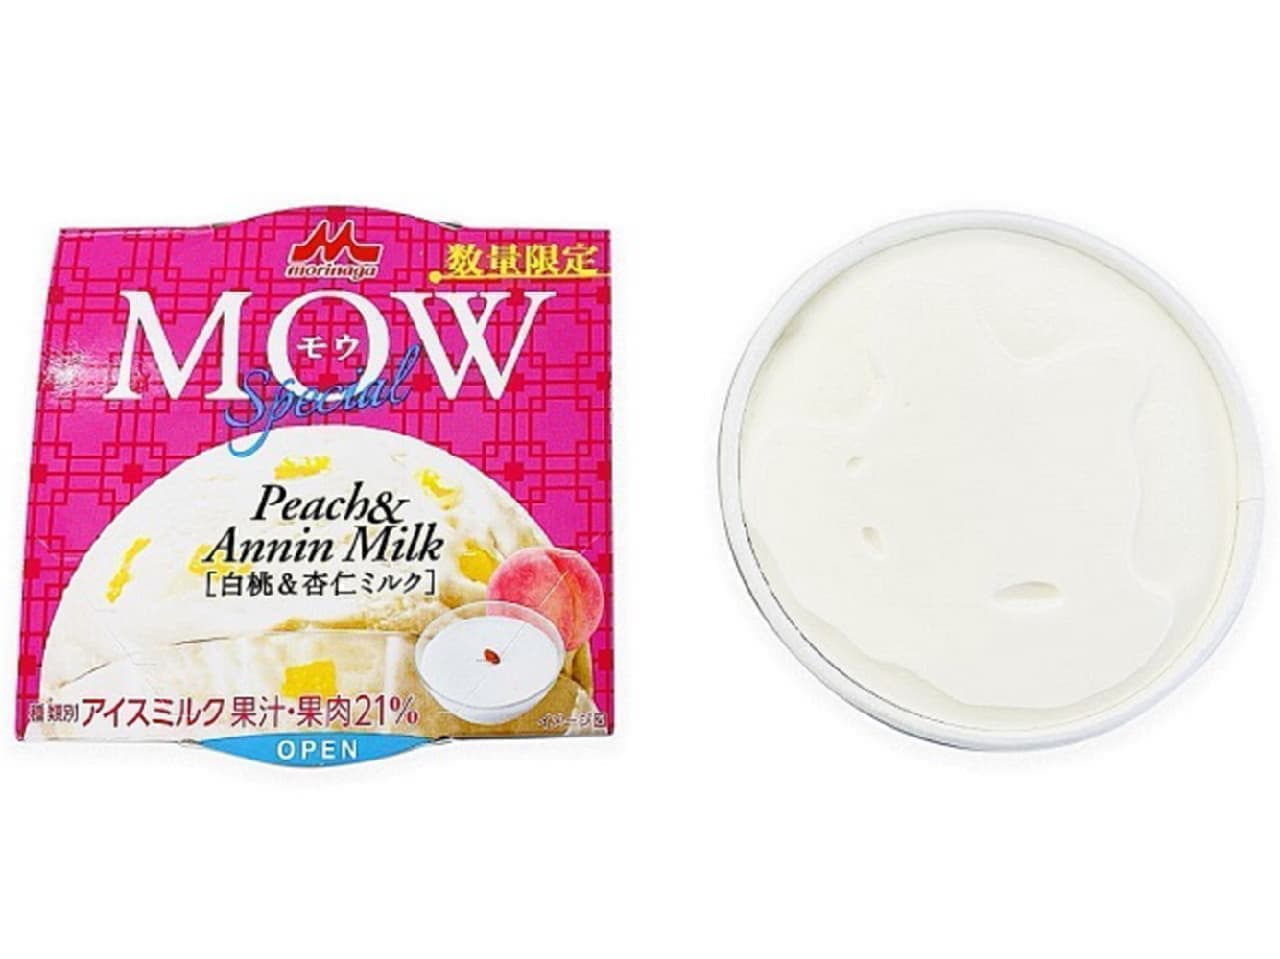 7-ELEVEN "Morinaga Moo Special - White Peach & Apricot Milk